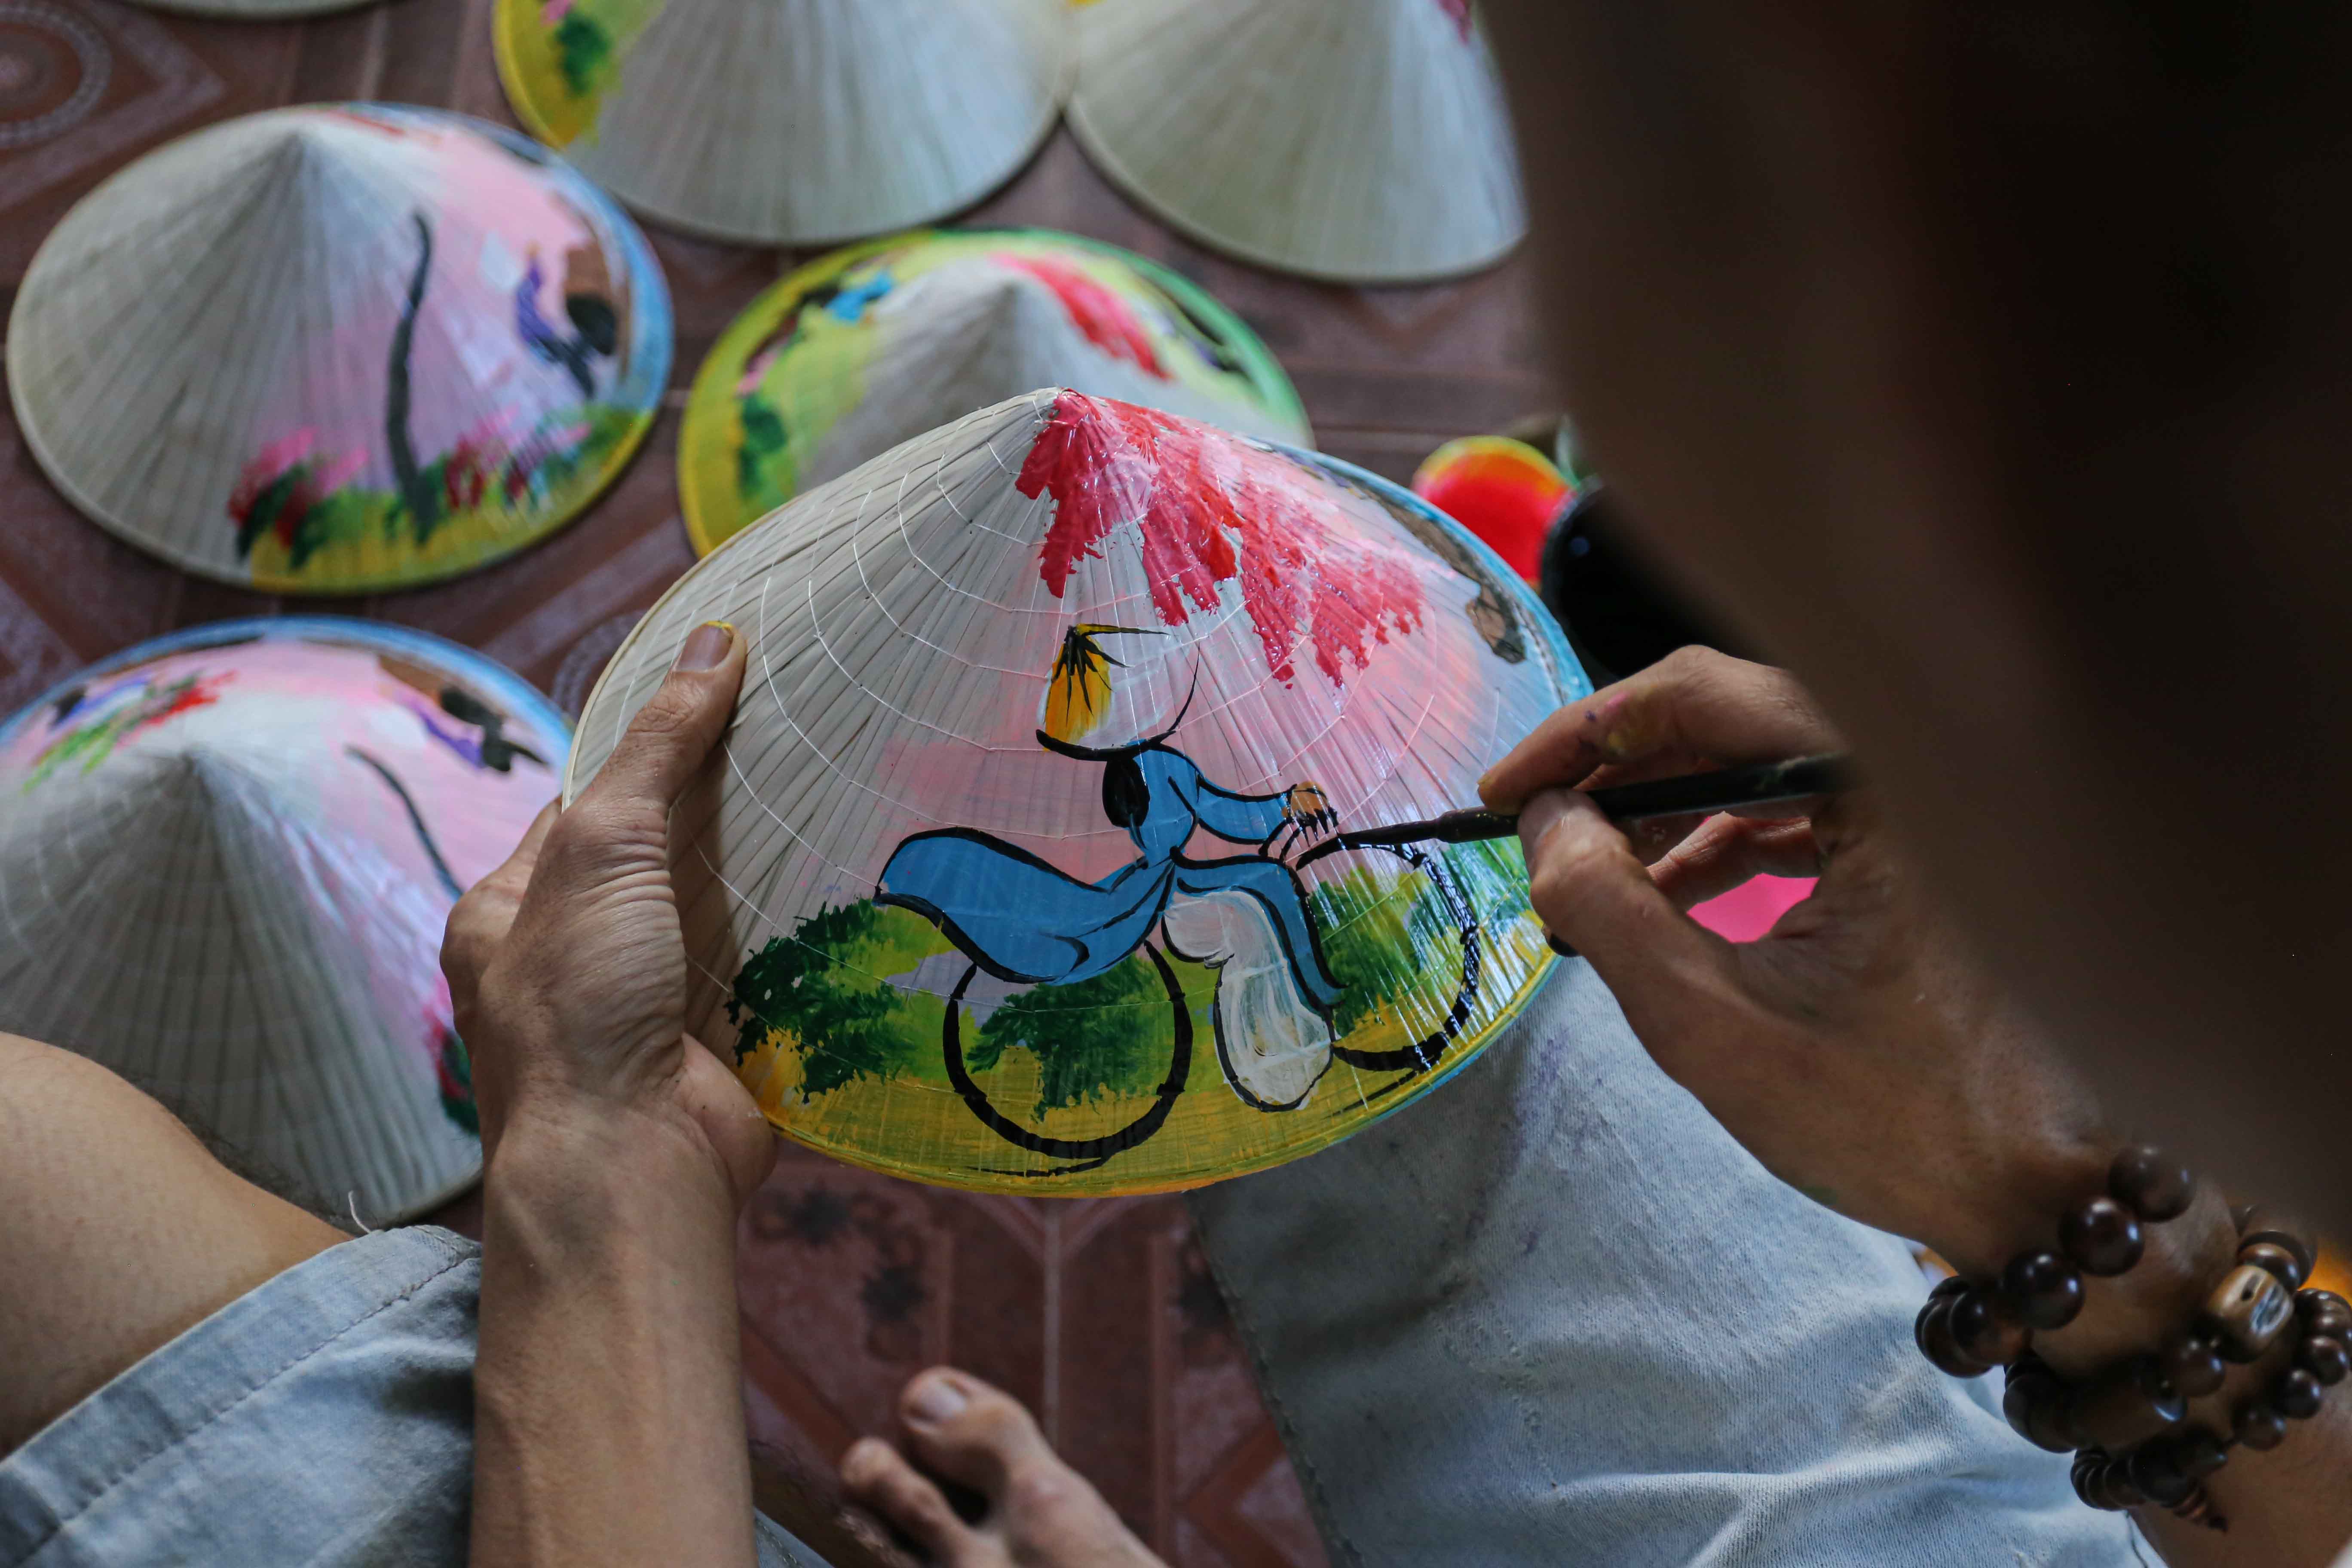 Nón lá là biểu tượng đặc trưng của văn hóa Việt Nam. Với đội ngũ thợ lành nghề, những chiếc nón lá được thực hiện tỉ mỉ, đẹp mắt. Vòng tròn nón lá nhẹ nhàng vô tư, giúp bạn cảm nhận được sự bình yên và đầy hy vọng của đất nước này. Hãy cùng nhau đắm chìm trong hình ảnh đẹp của nón lá!